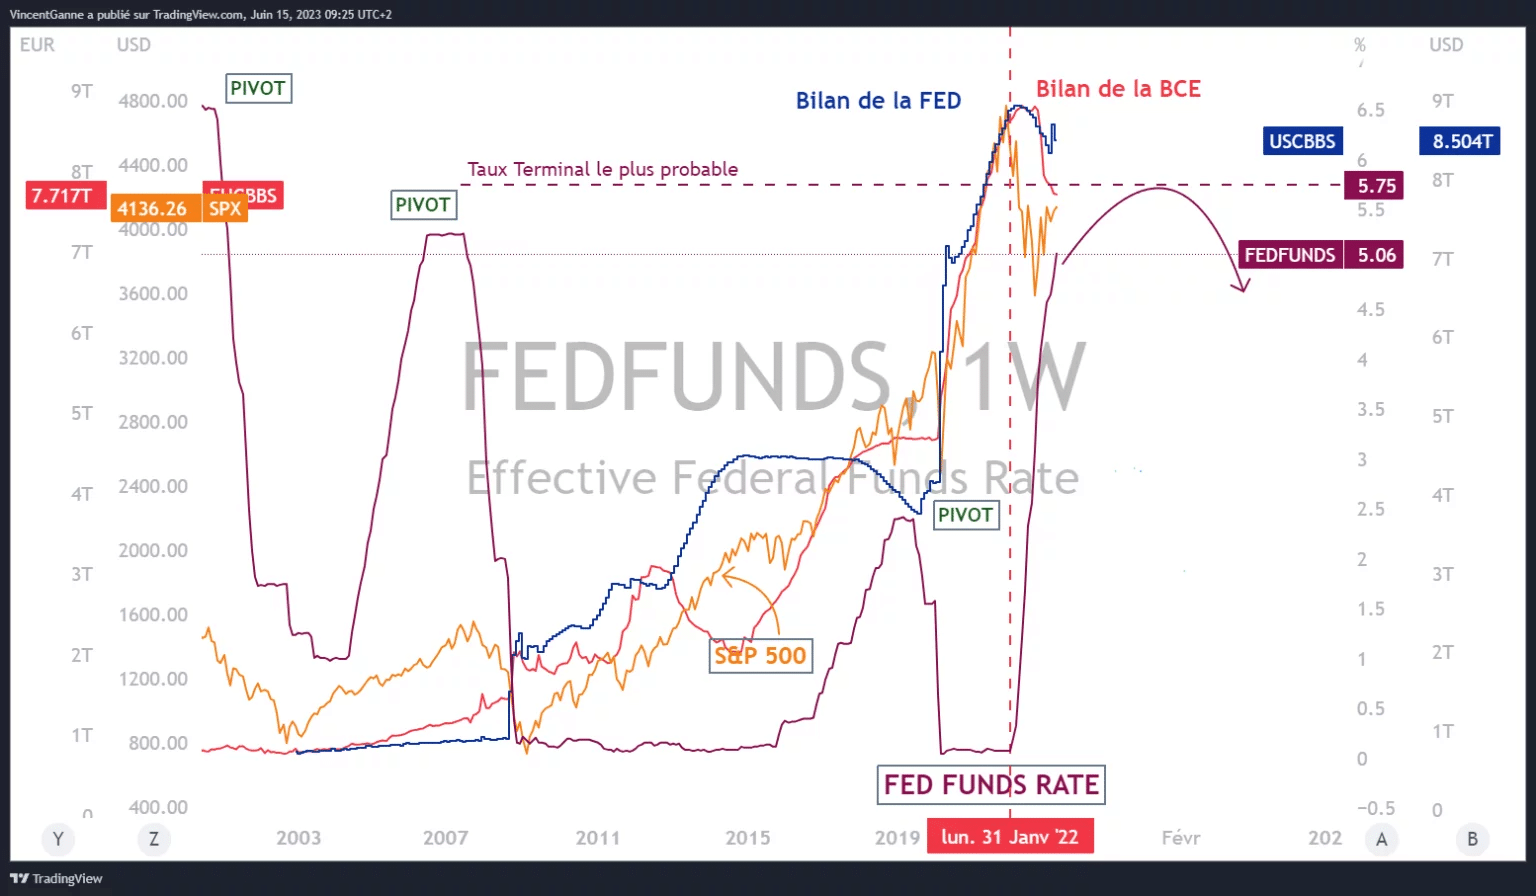 Grafik, die mit der TradingView-Website erstellt wurde und folgende Informationen enthält: den Zinssatz der Fed Funds, den wahrscheinlichsten Terminalsatz der FED, die Bilanz der FED und die Bilanz der EZB